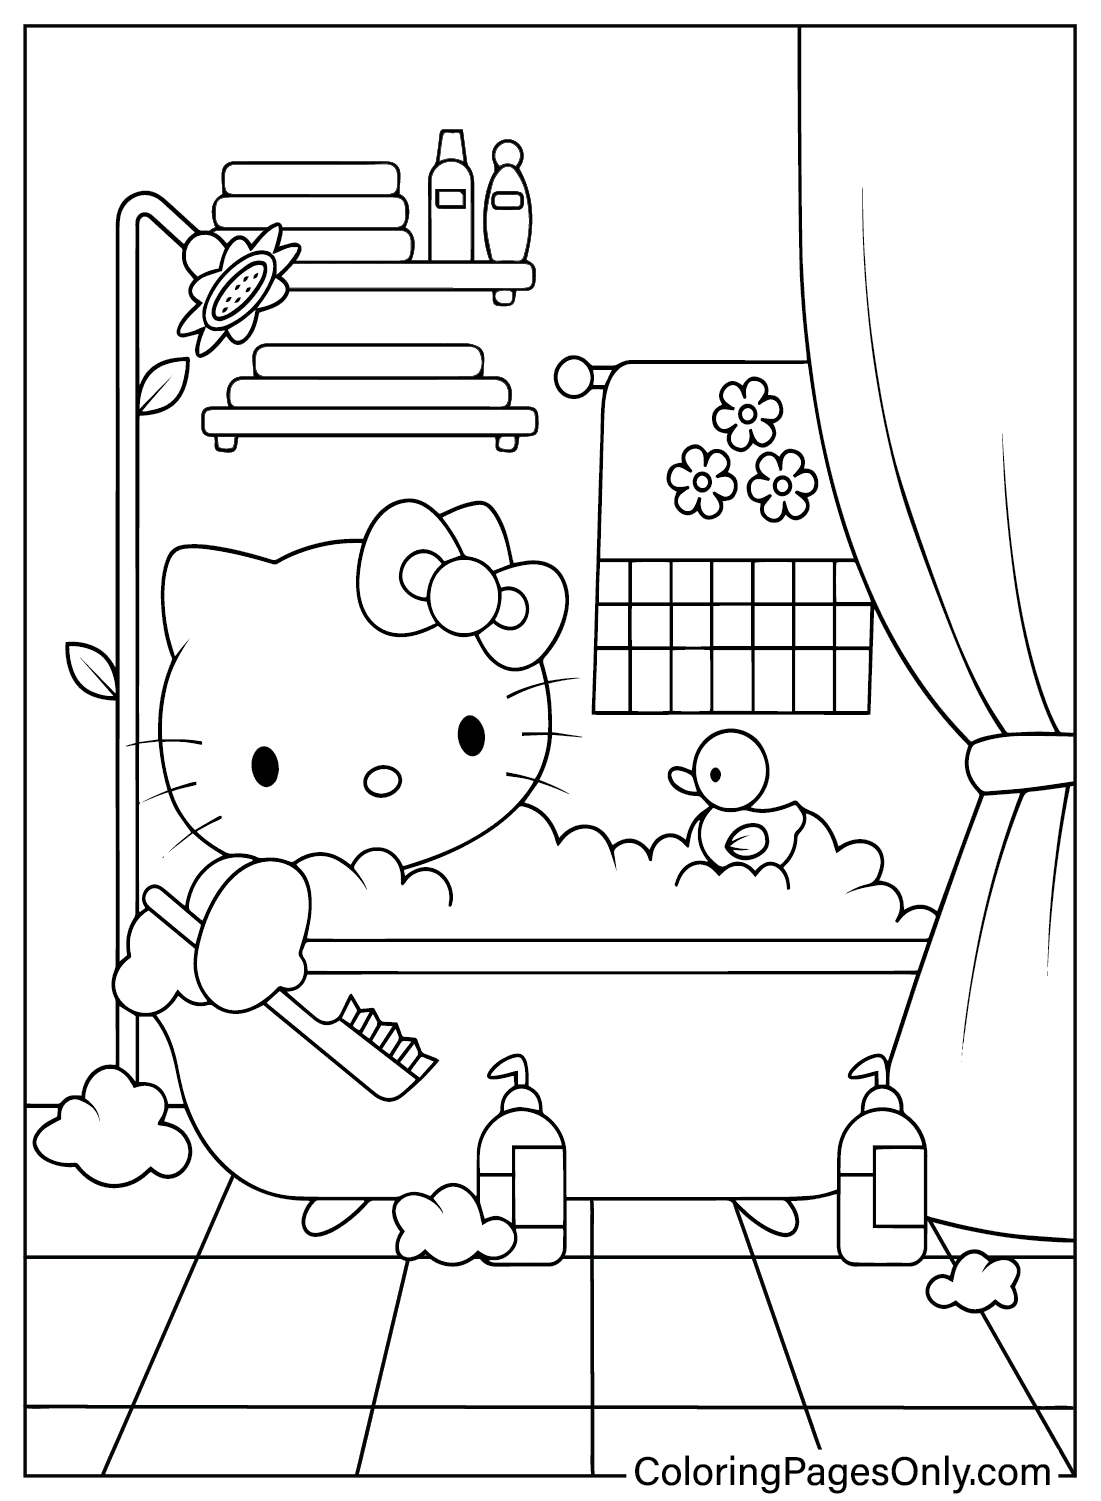 Página para colorir de fotos da Hello Kitty grátis